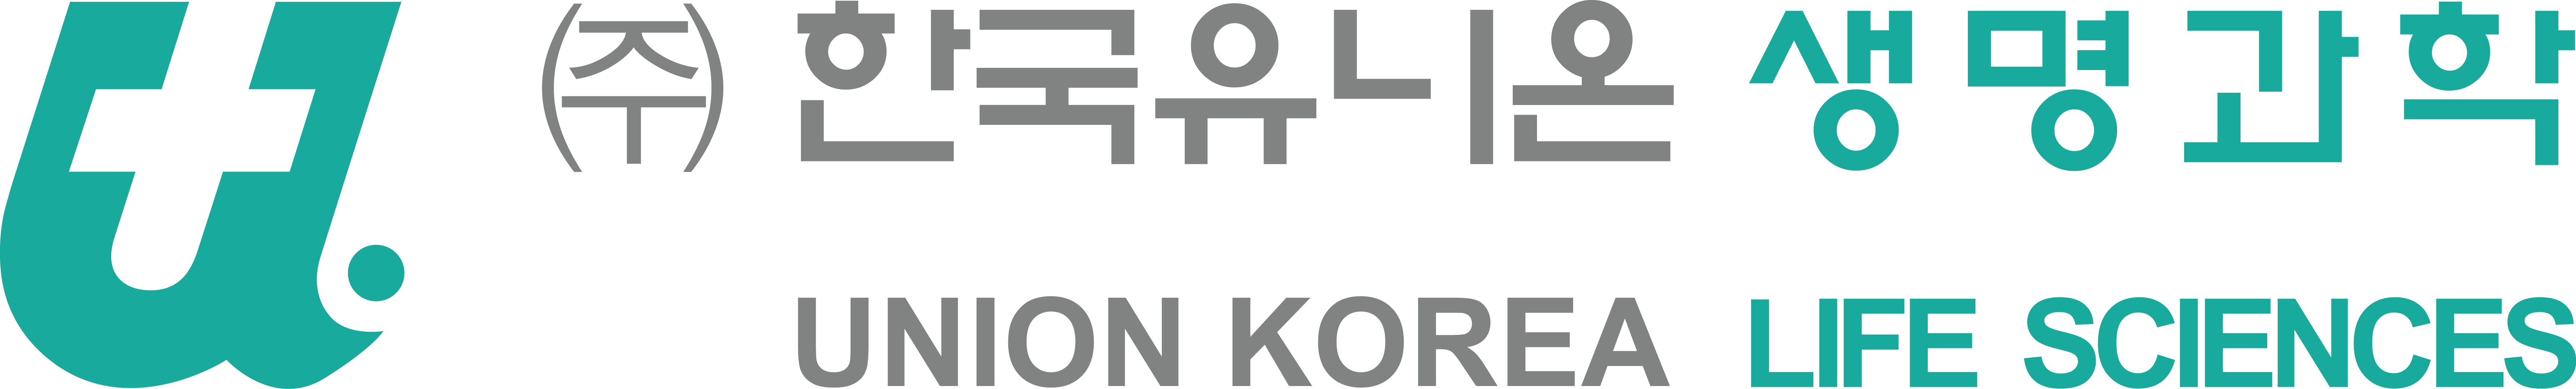 한국유니온제약의 계열사 (주)한국유니온생명과학의 로고